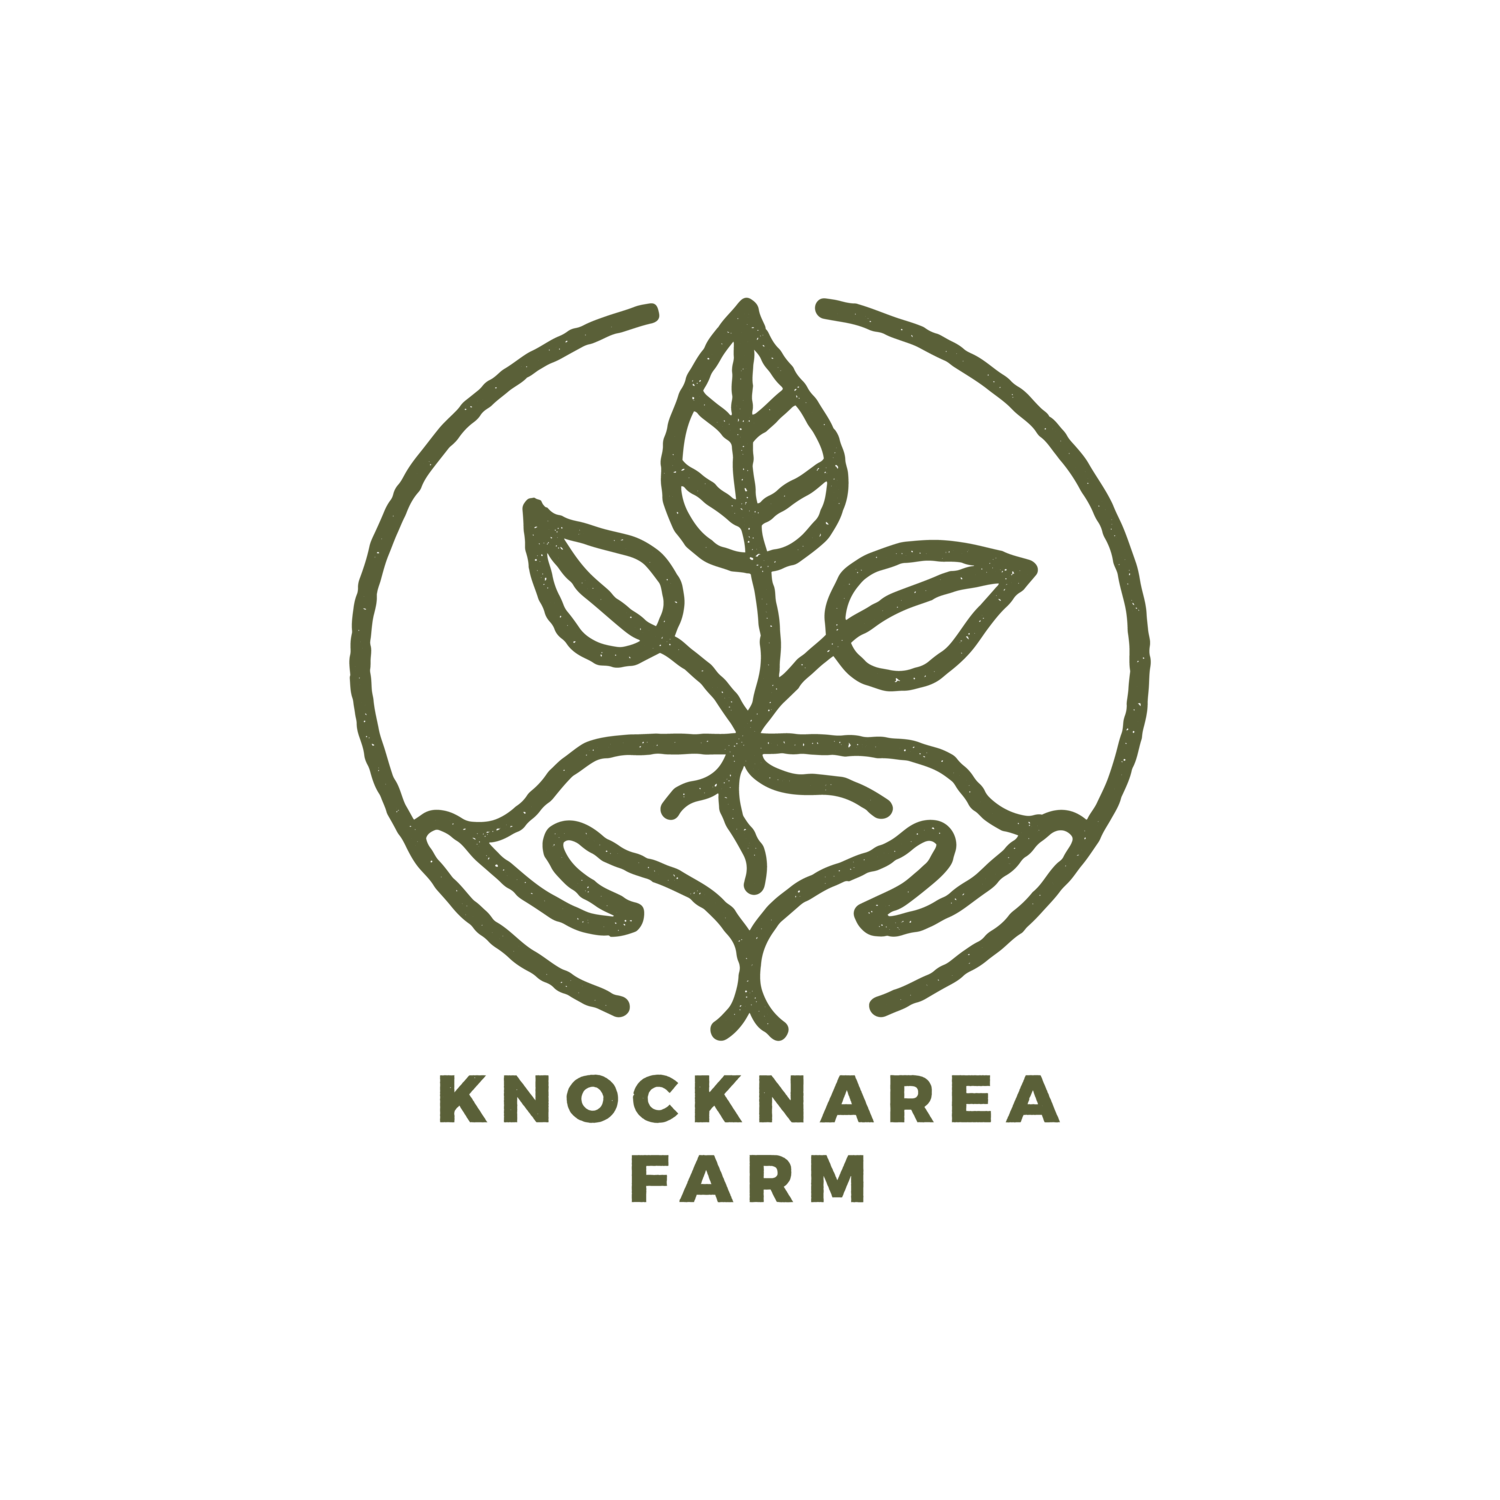 Knocknarea Farm